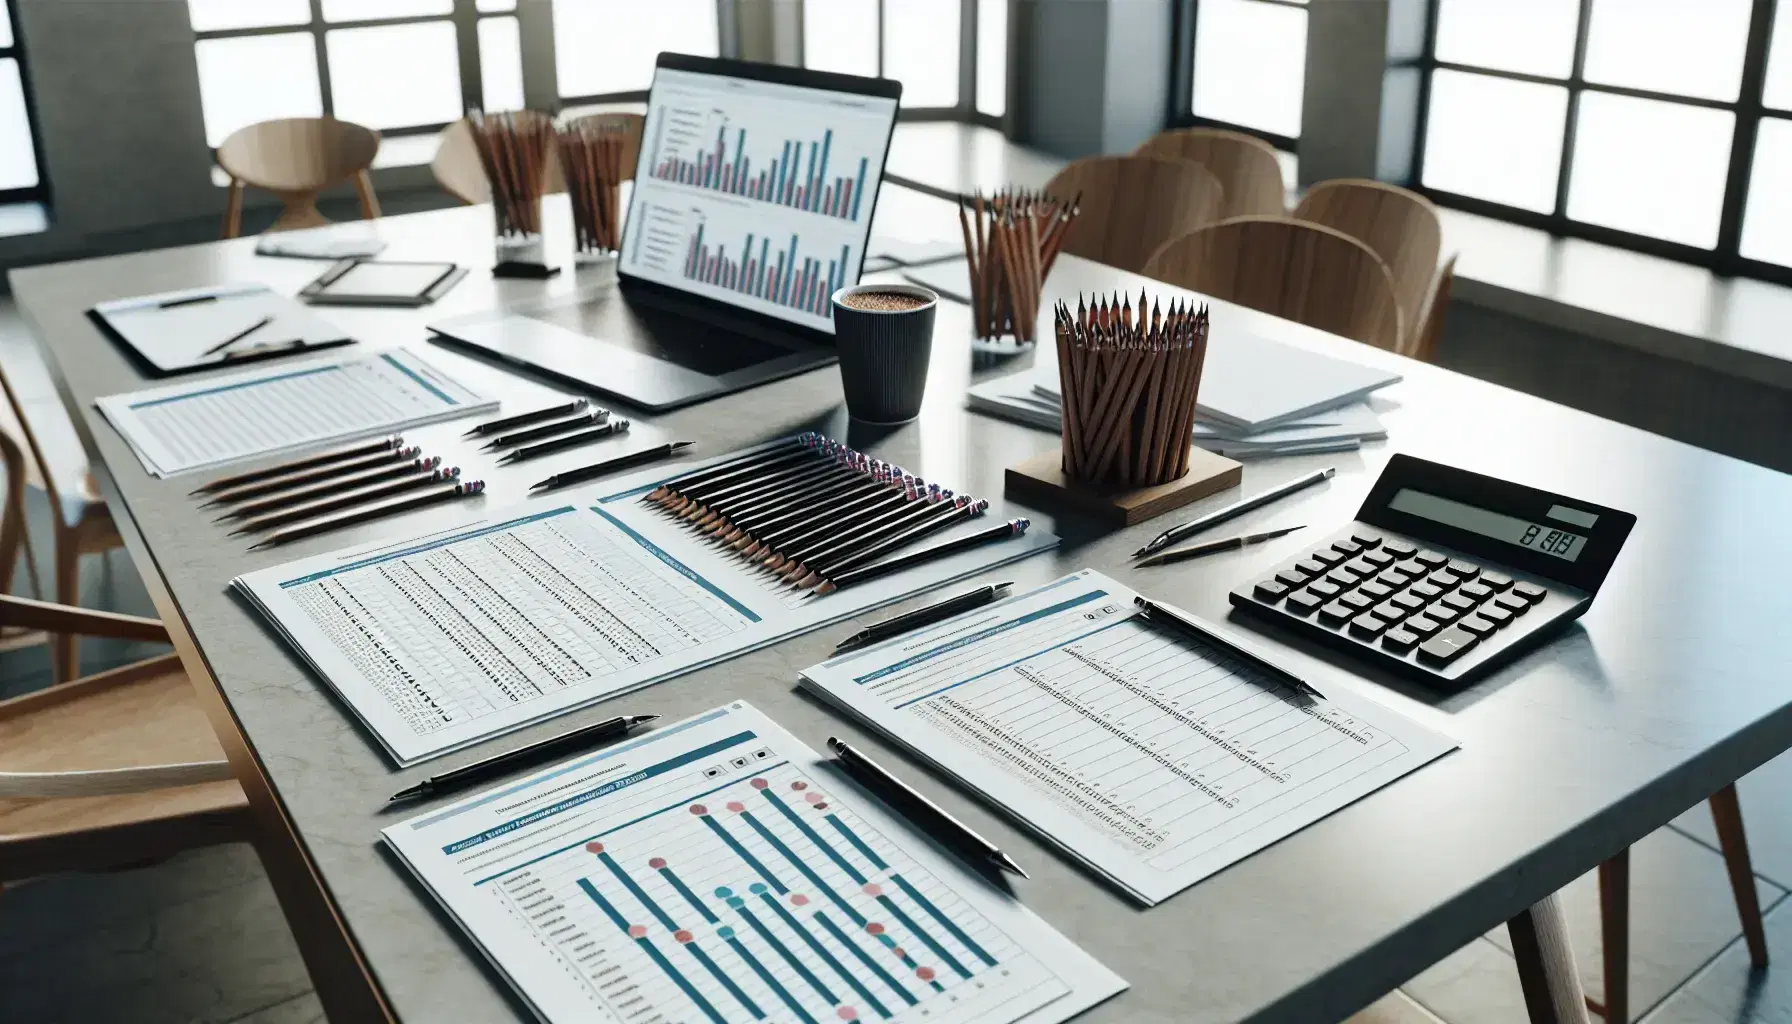 Mesa de trabajo con cuestionarios impresos, lápices alineados, portátil mostrando gráficos, calculadora científica, taza de café y cuaderno abierto.